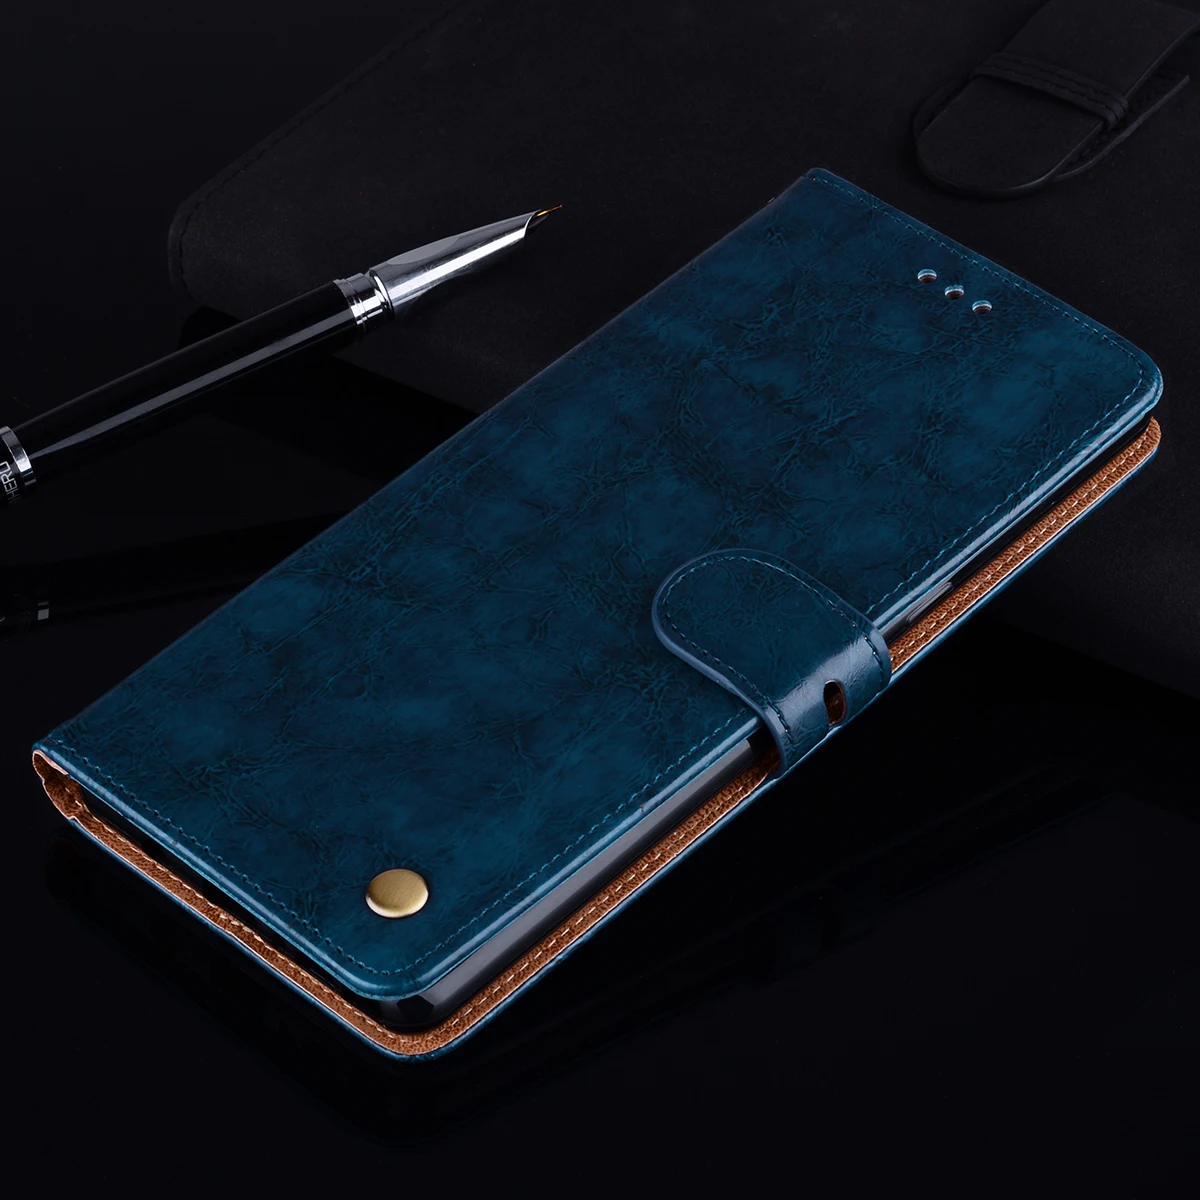 Роскошный кожаный чехол-книжка с отделениями для карт чехол для samsung Galaxy S8 S10 S9 плюс S10E S 10 8 GalaxyS8 GalaxyS9 GalaxyS10 S10+ S9+ S8+ книга чехол - Цвет: Blue